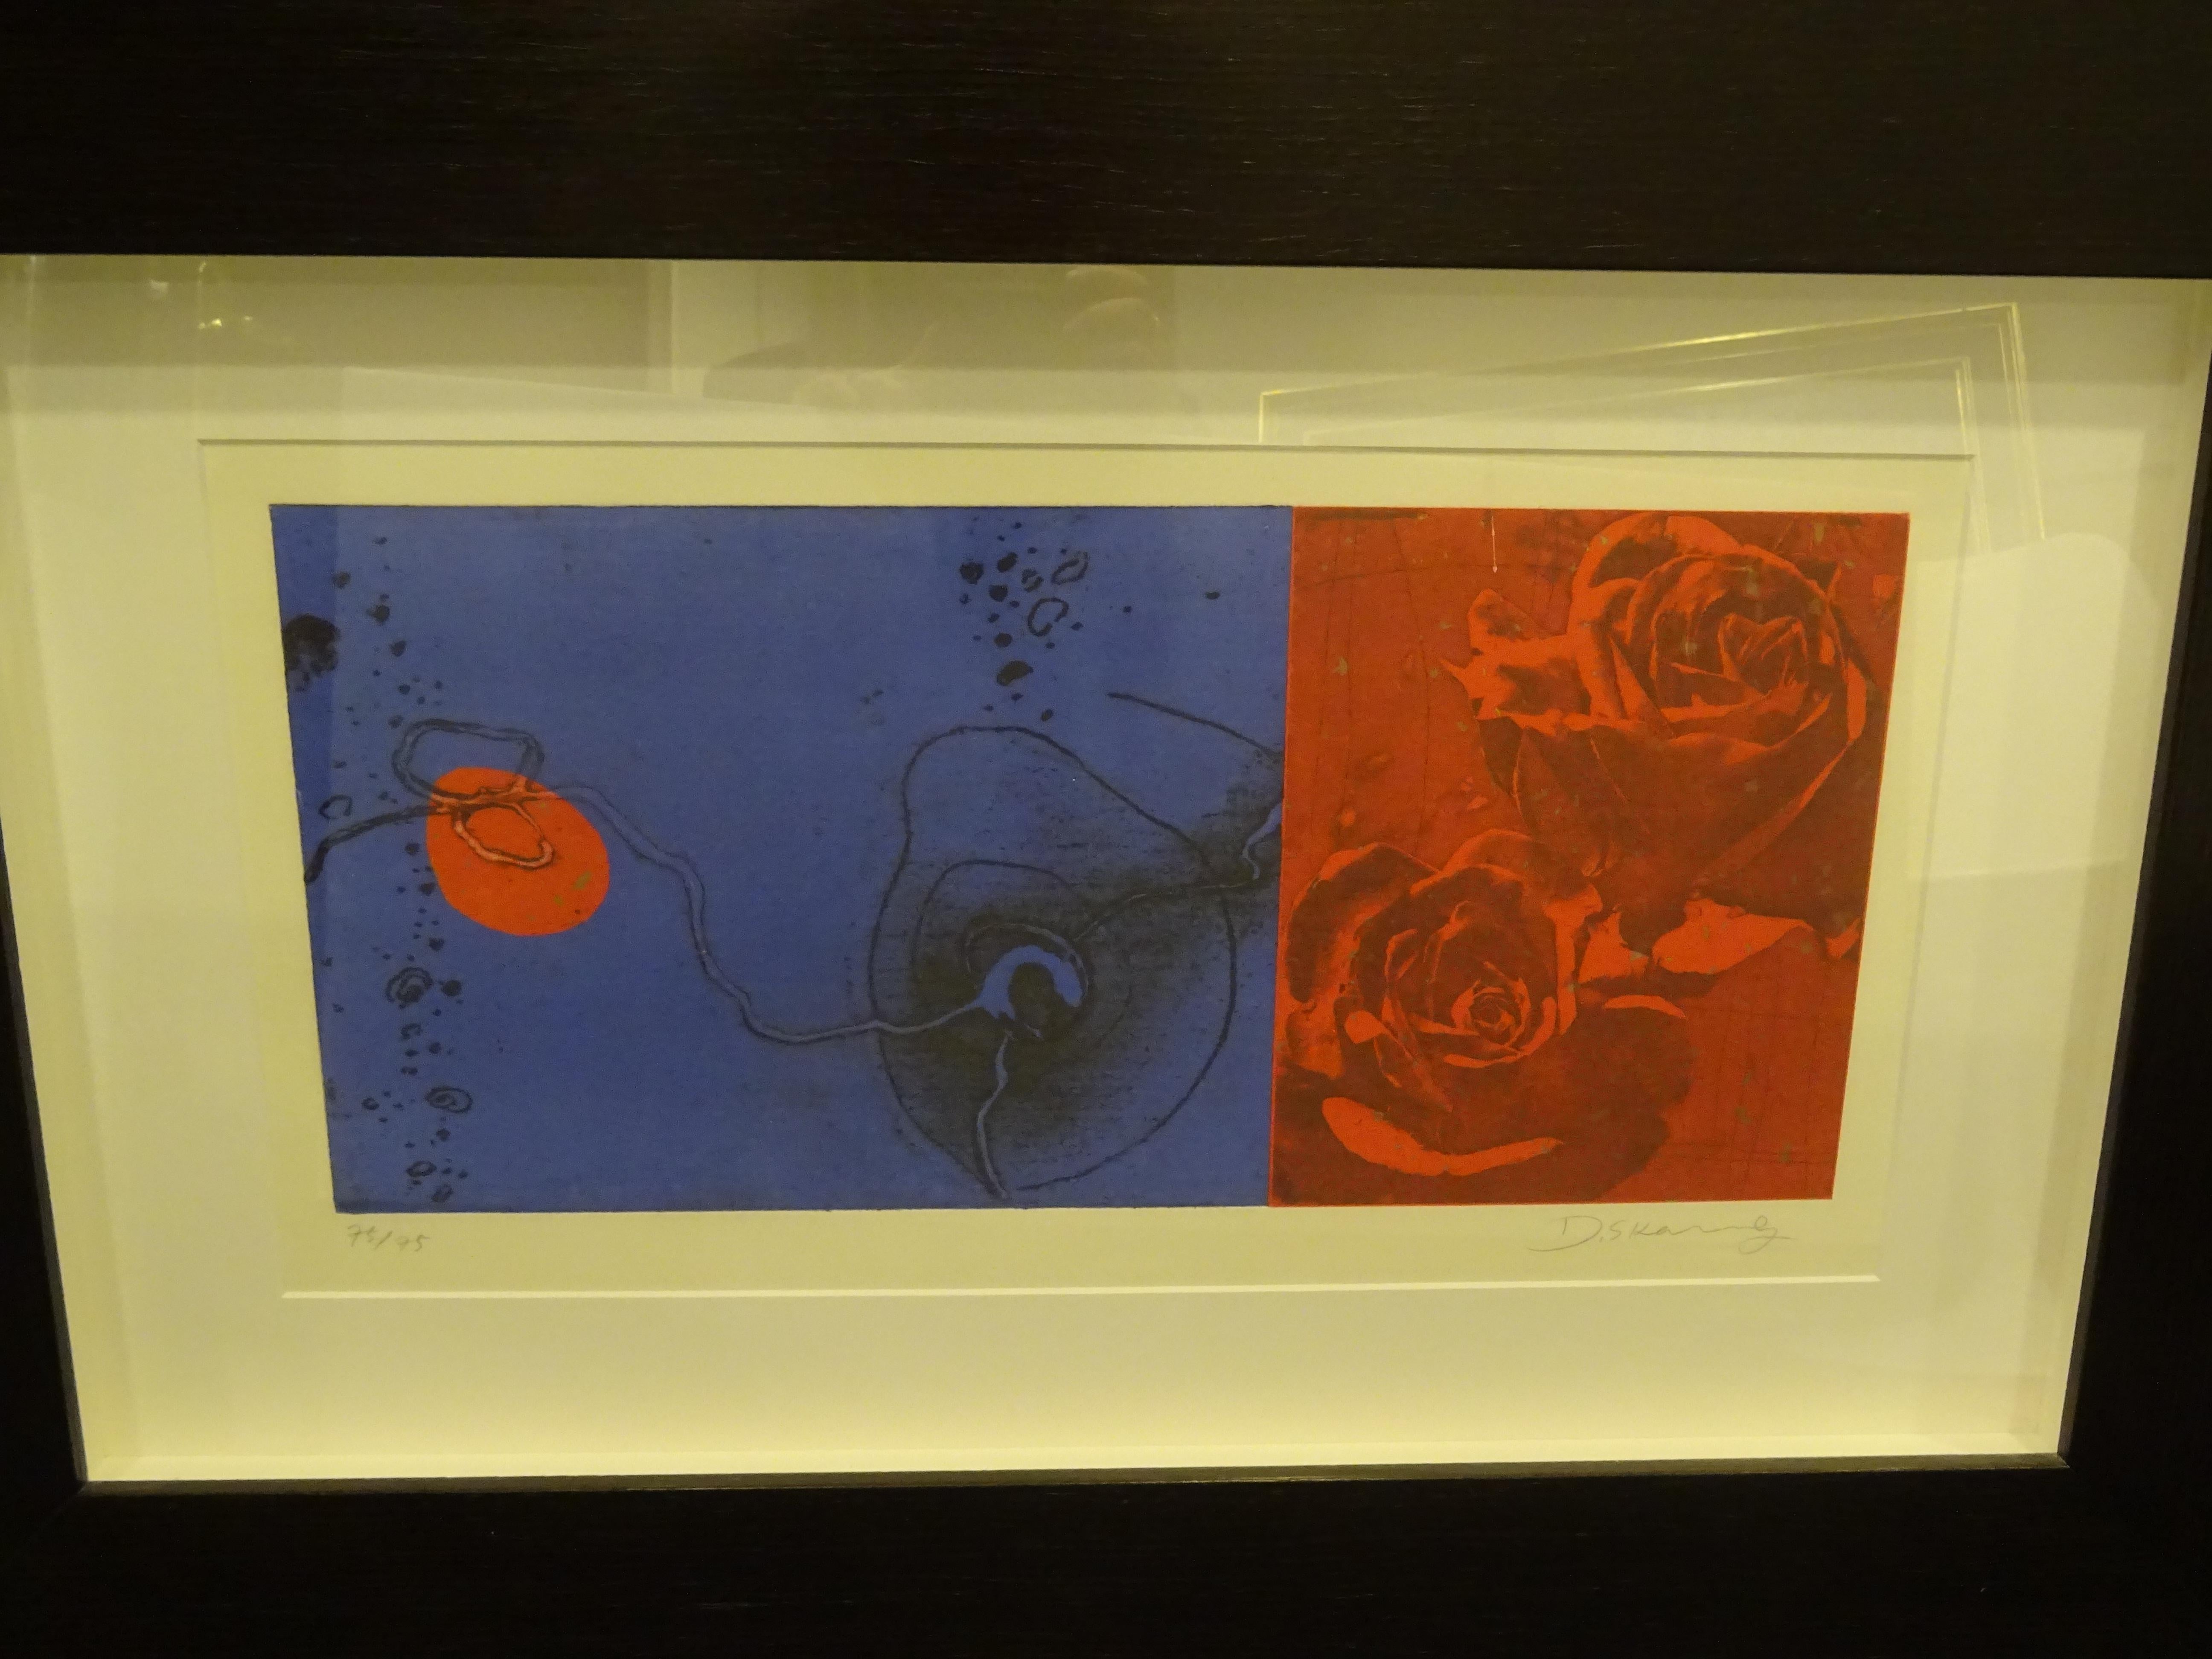 Schönes Kunstwerk des zeitgenössischen koreanischen Künstlers Duck Sung Kang, ist eine geätzte oder gemischte Technik in blauer, schwarzer und roter Farbe, ein einzigartiges Stück mit großen ästhetischen Kriterien, die eine kosmopolitische Note zu